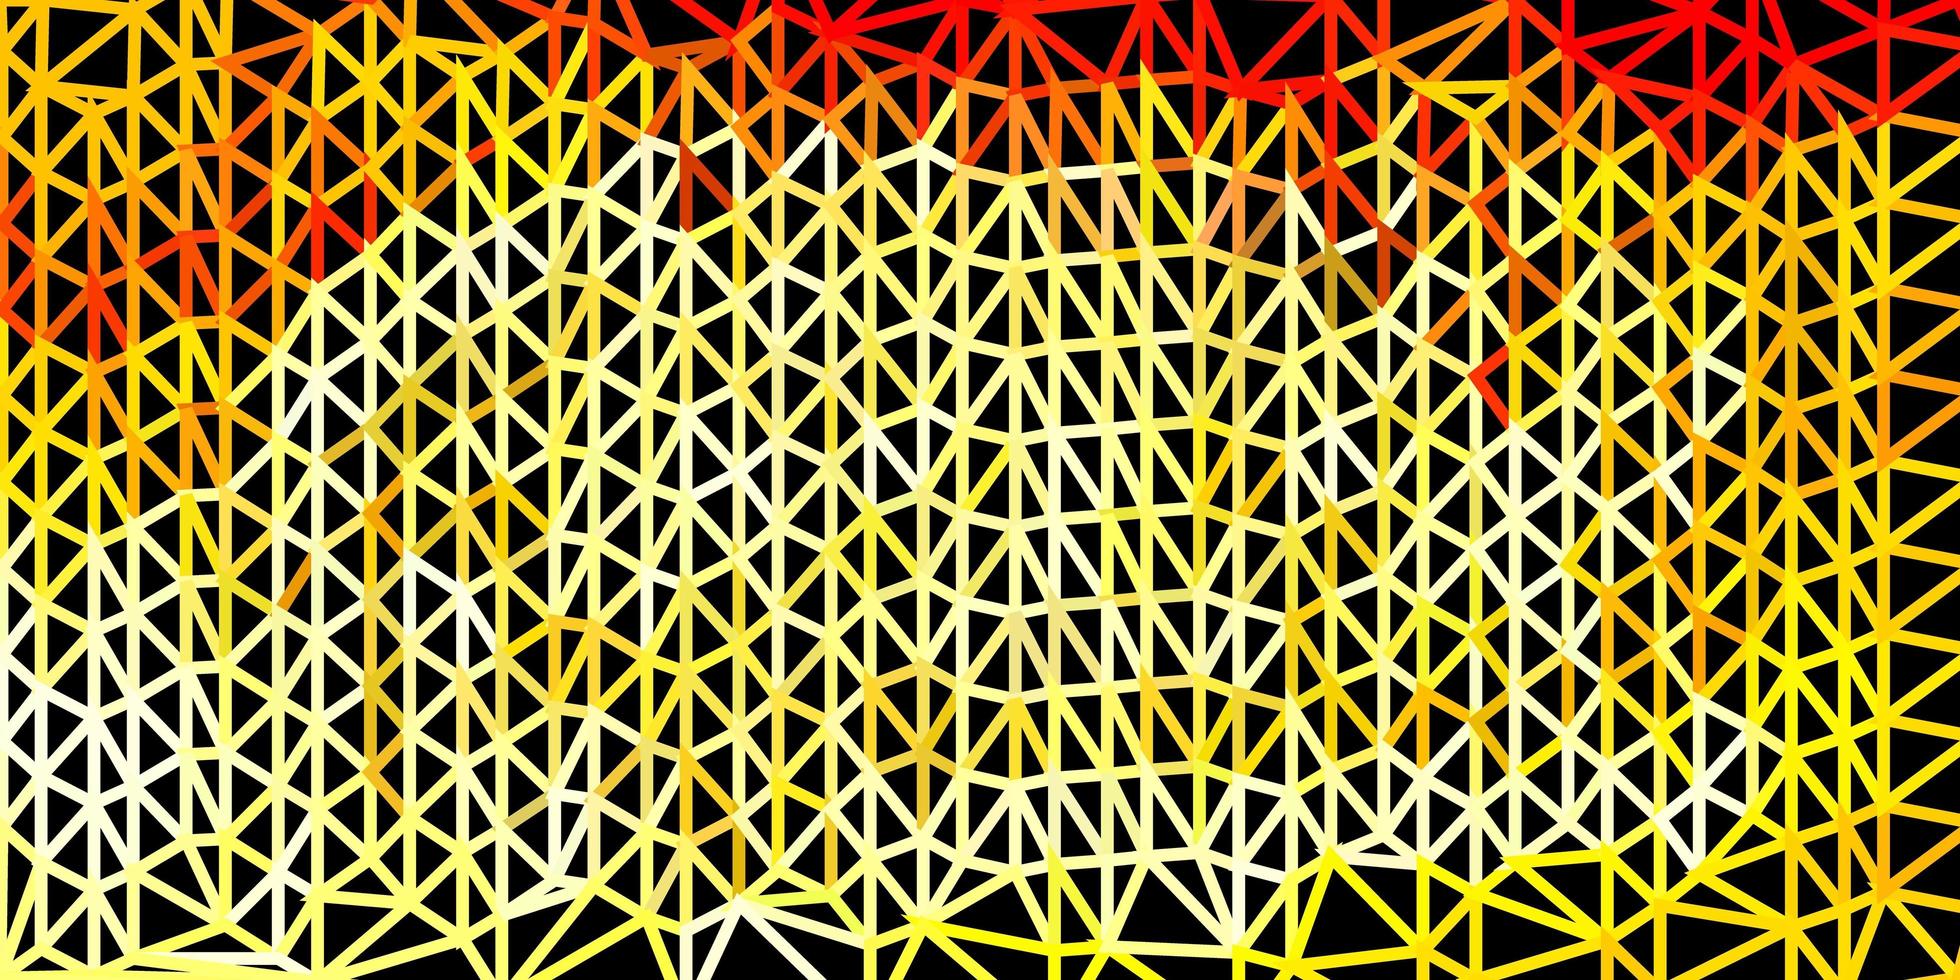 padrão de mosaico do triângulo do vetor laranja claro.